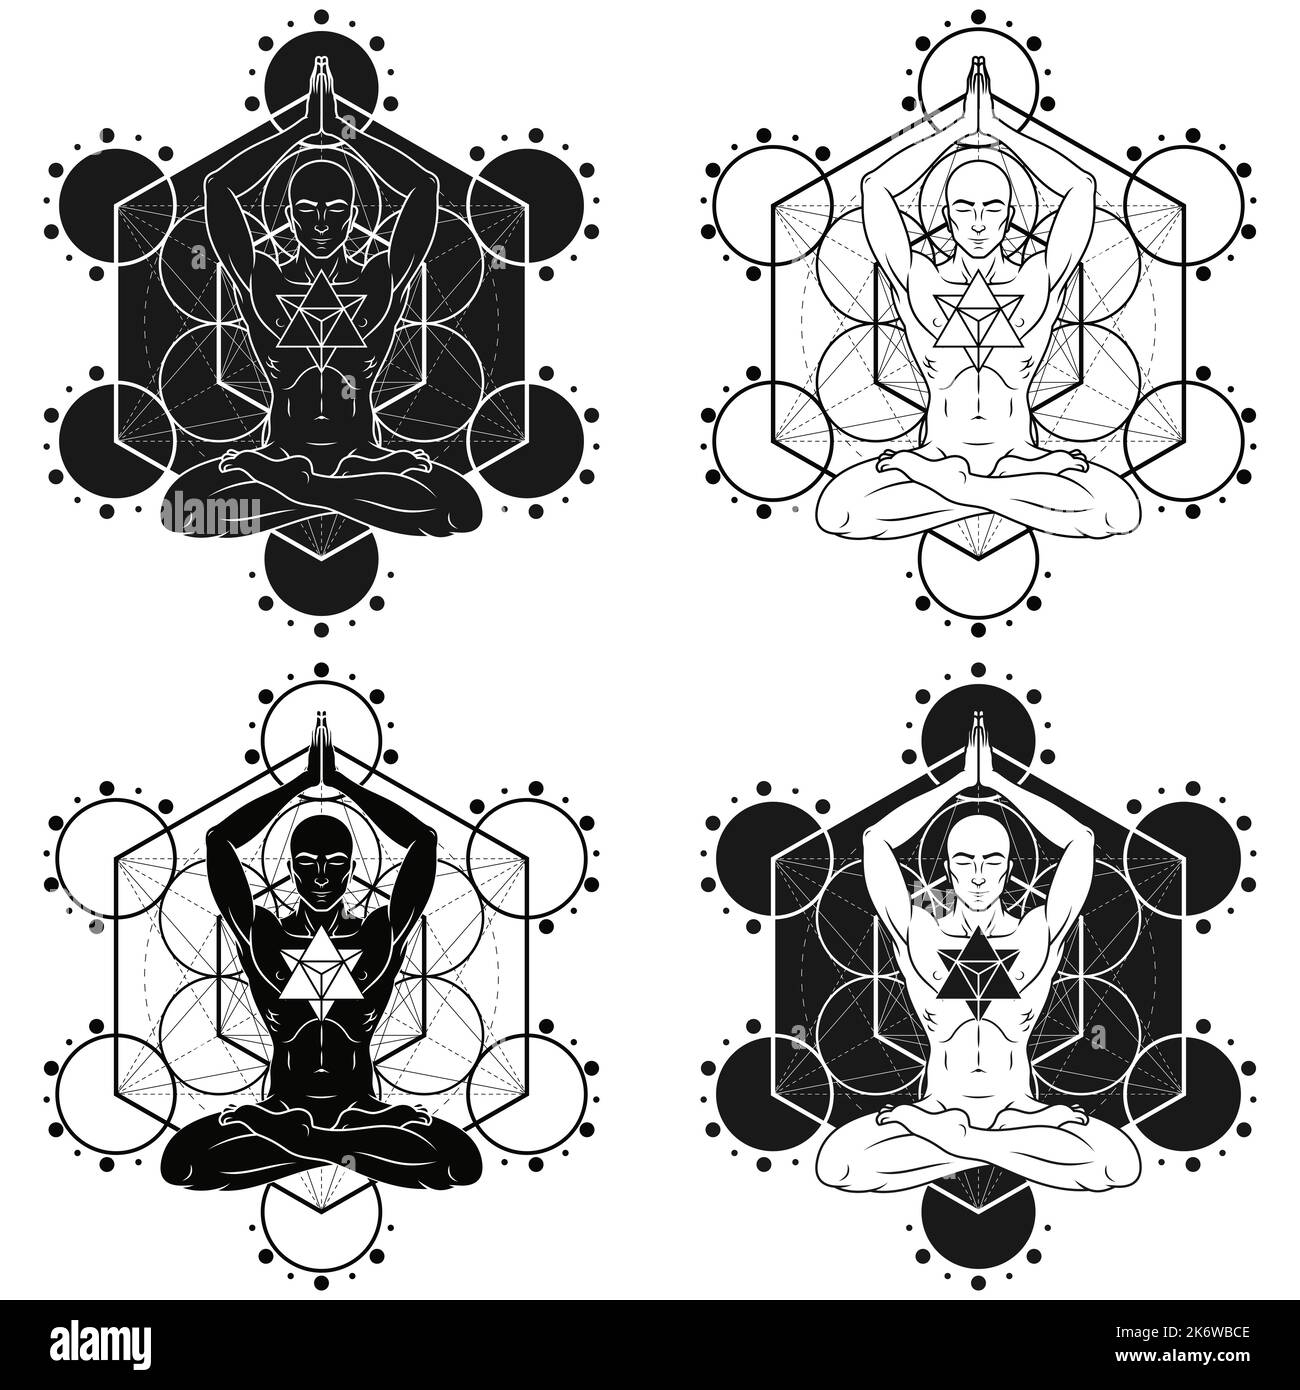 Disegno vettoriale dell'uomo meditando in posizione loto con e Merkaba, uomo che fa yoga e figura metatron sullo sfondo Illustrazione Vettoriale